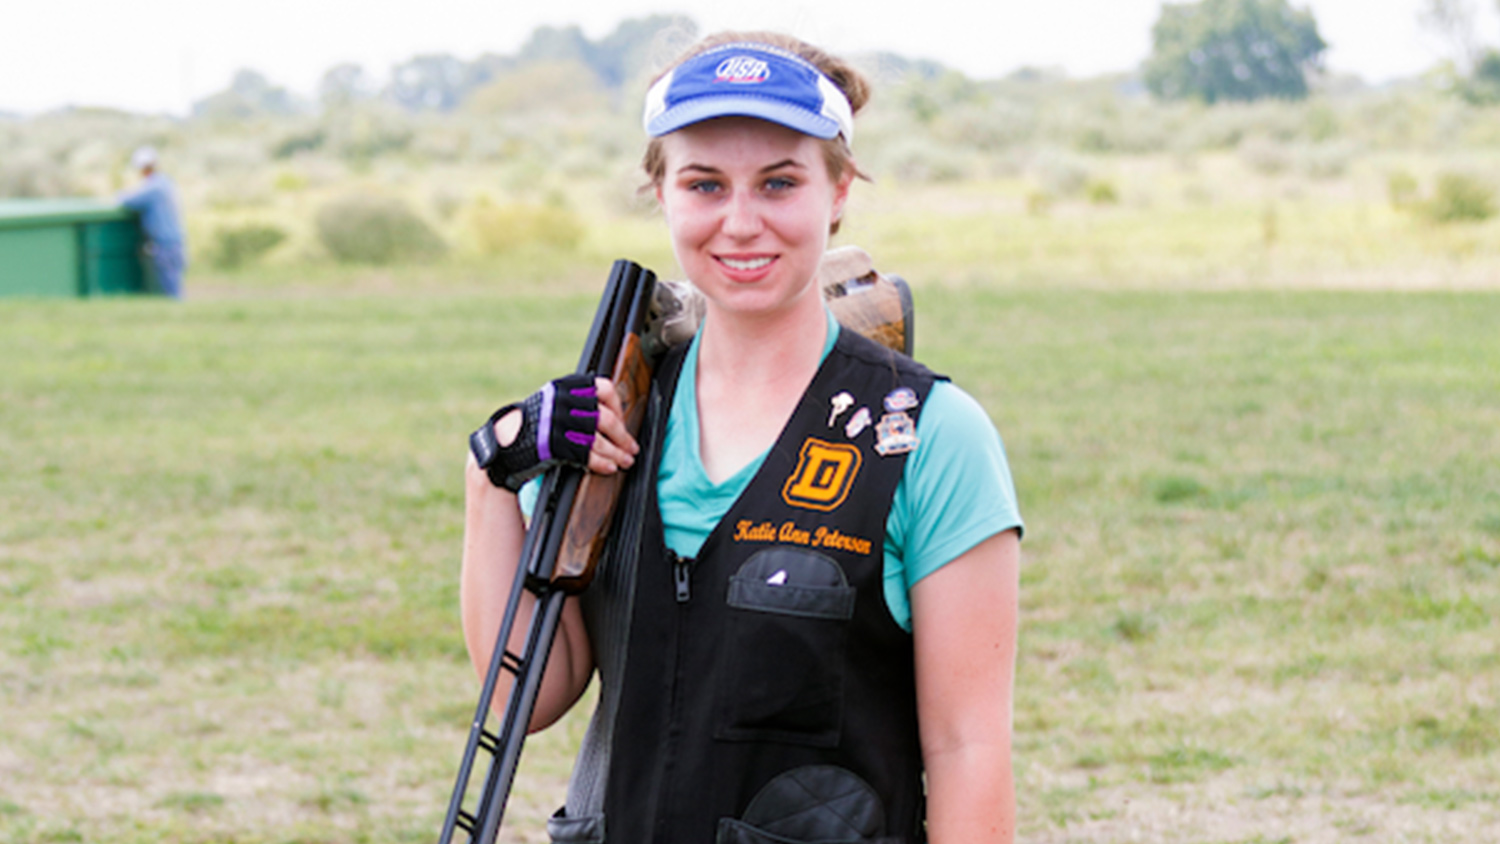 Trapshooter Katie Petersen of Nebraska